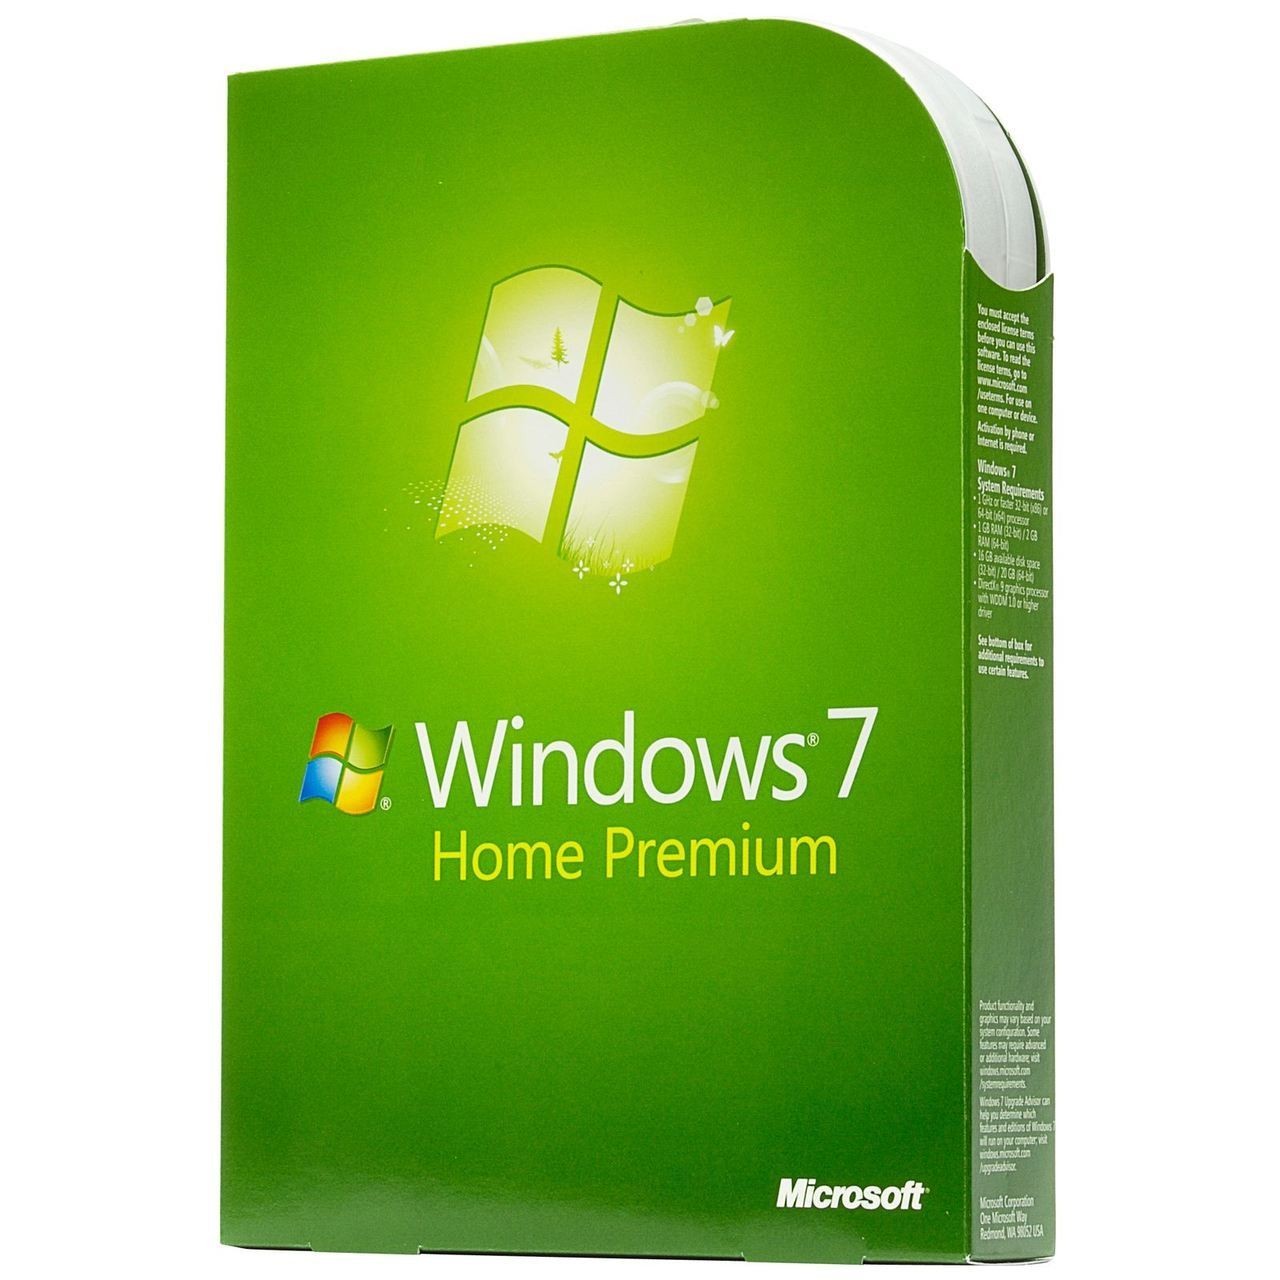 Windows 7 Home Premium 64bit Iso Download Torrent